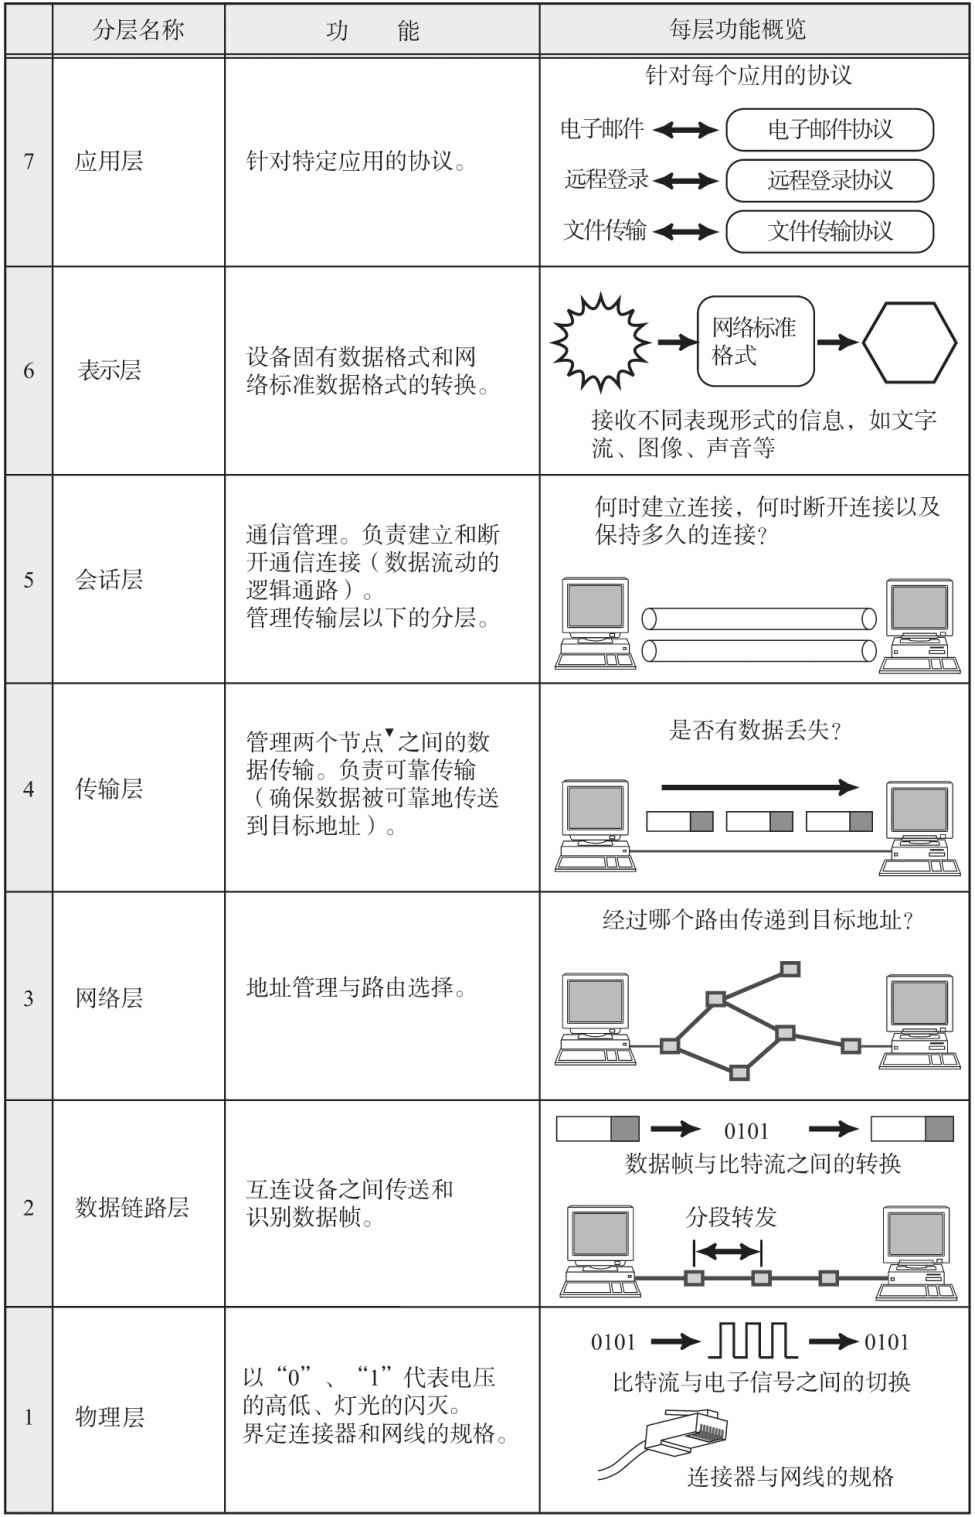 计算机软件水平考试《网络工程师》-第1章 网络体系结构